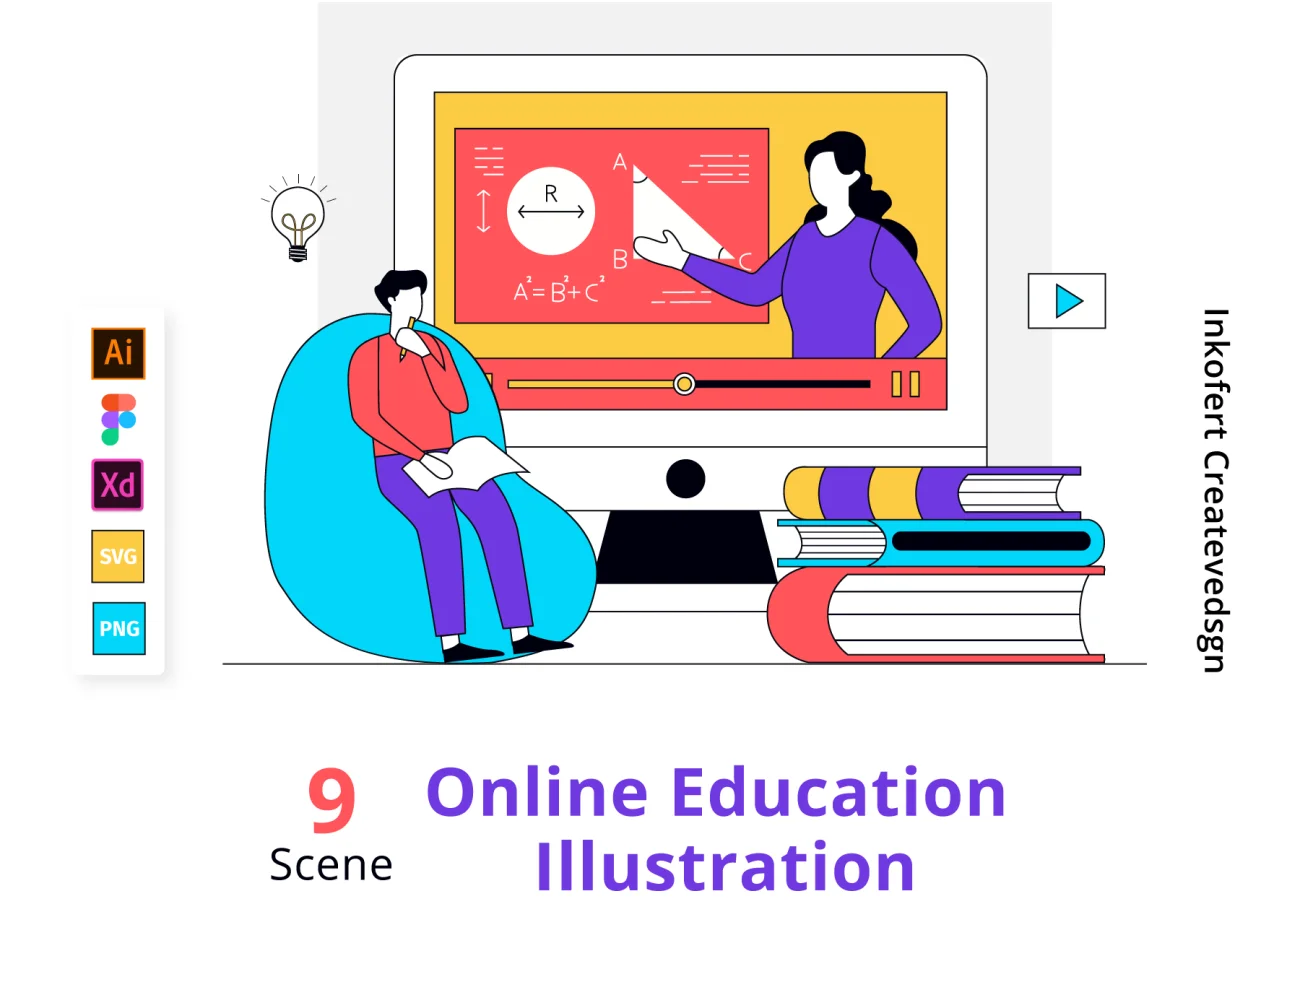 Online Education Illustration 9场景在线教育扁平化多彩矢量插图-人物插画、场景插画、学习生活、插画、插画功能、教育医疗、数据演示、状态页、线条手绘、职场办公-到位啦UI